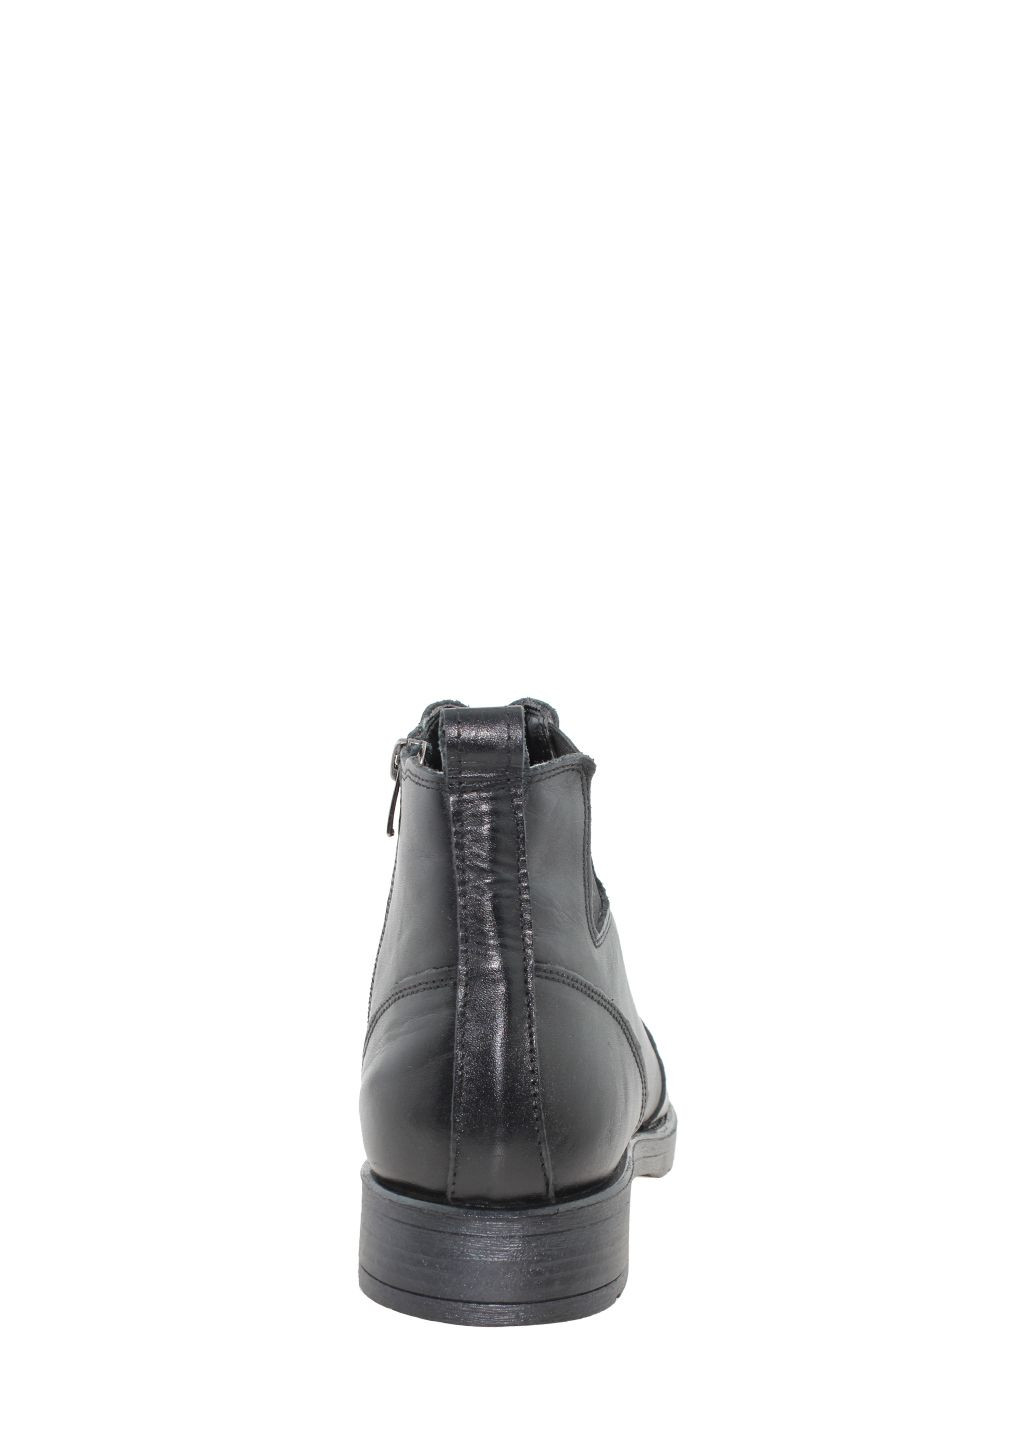 Черные осенние ботинки g1986.01 черный Goover